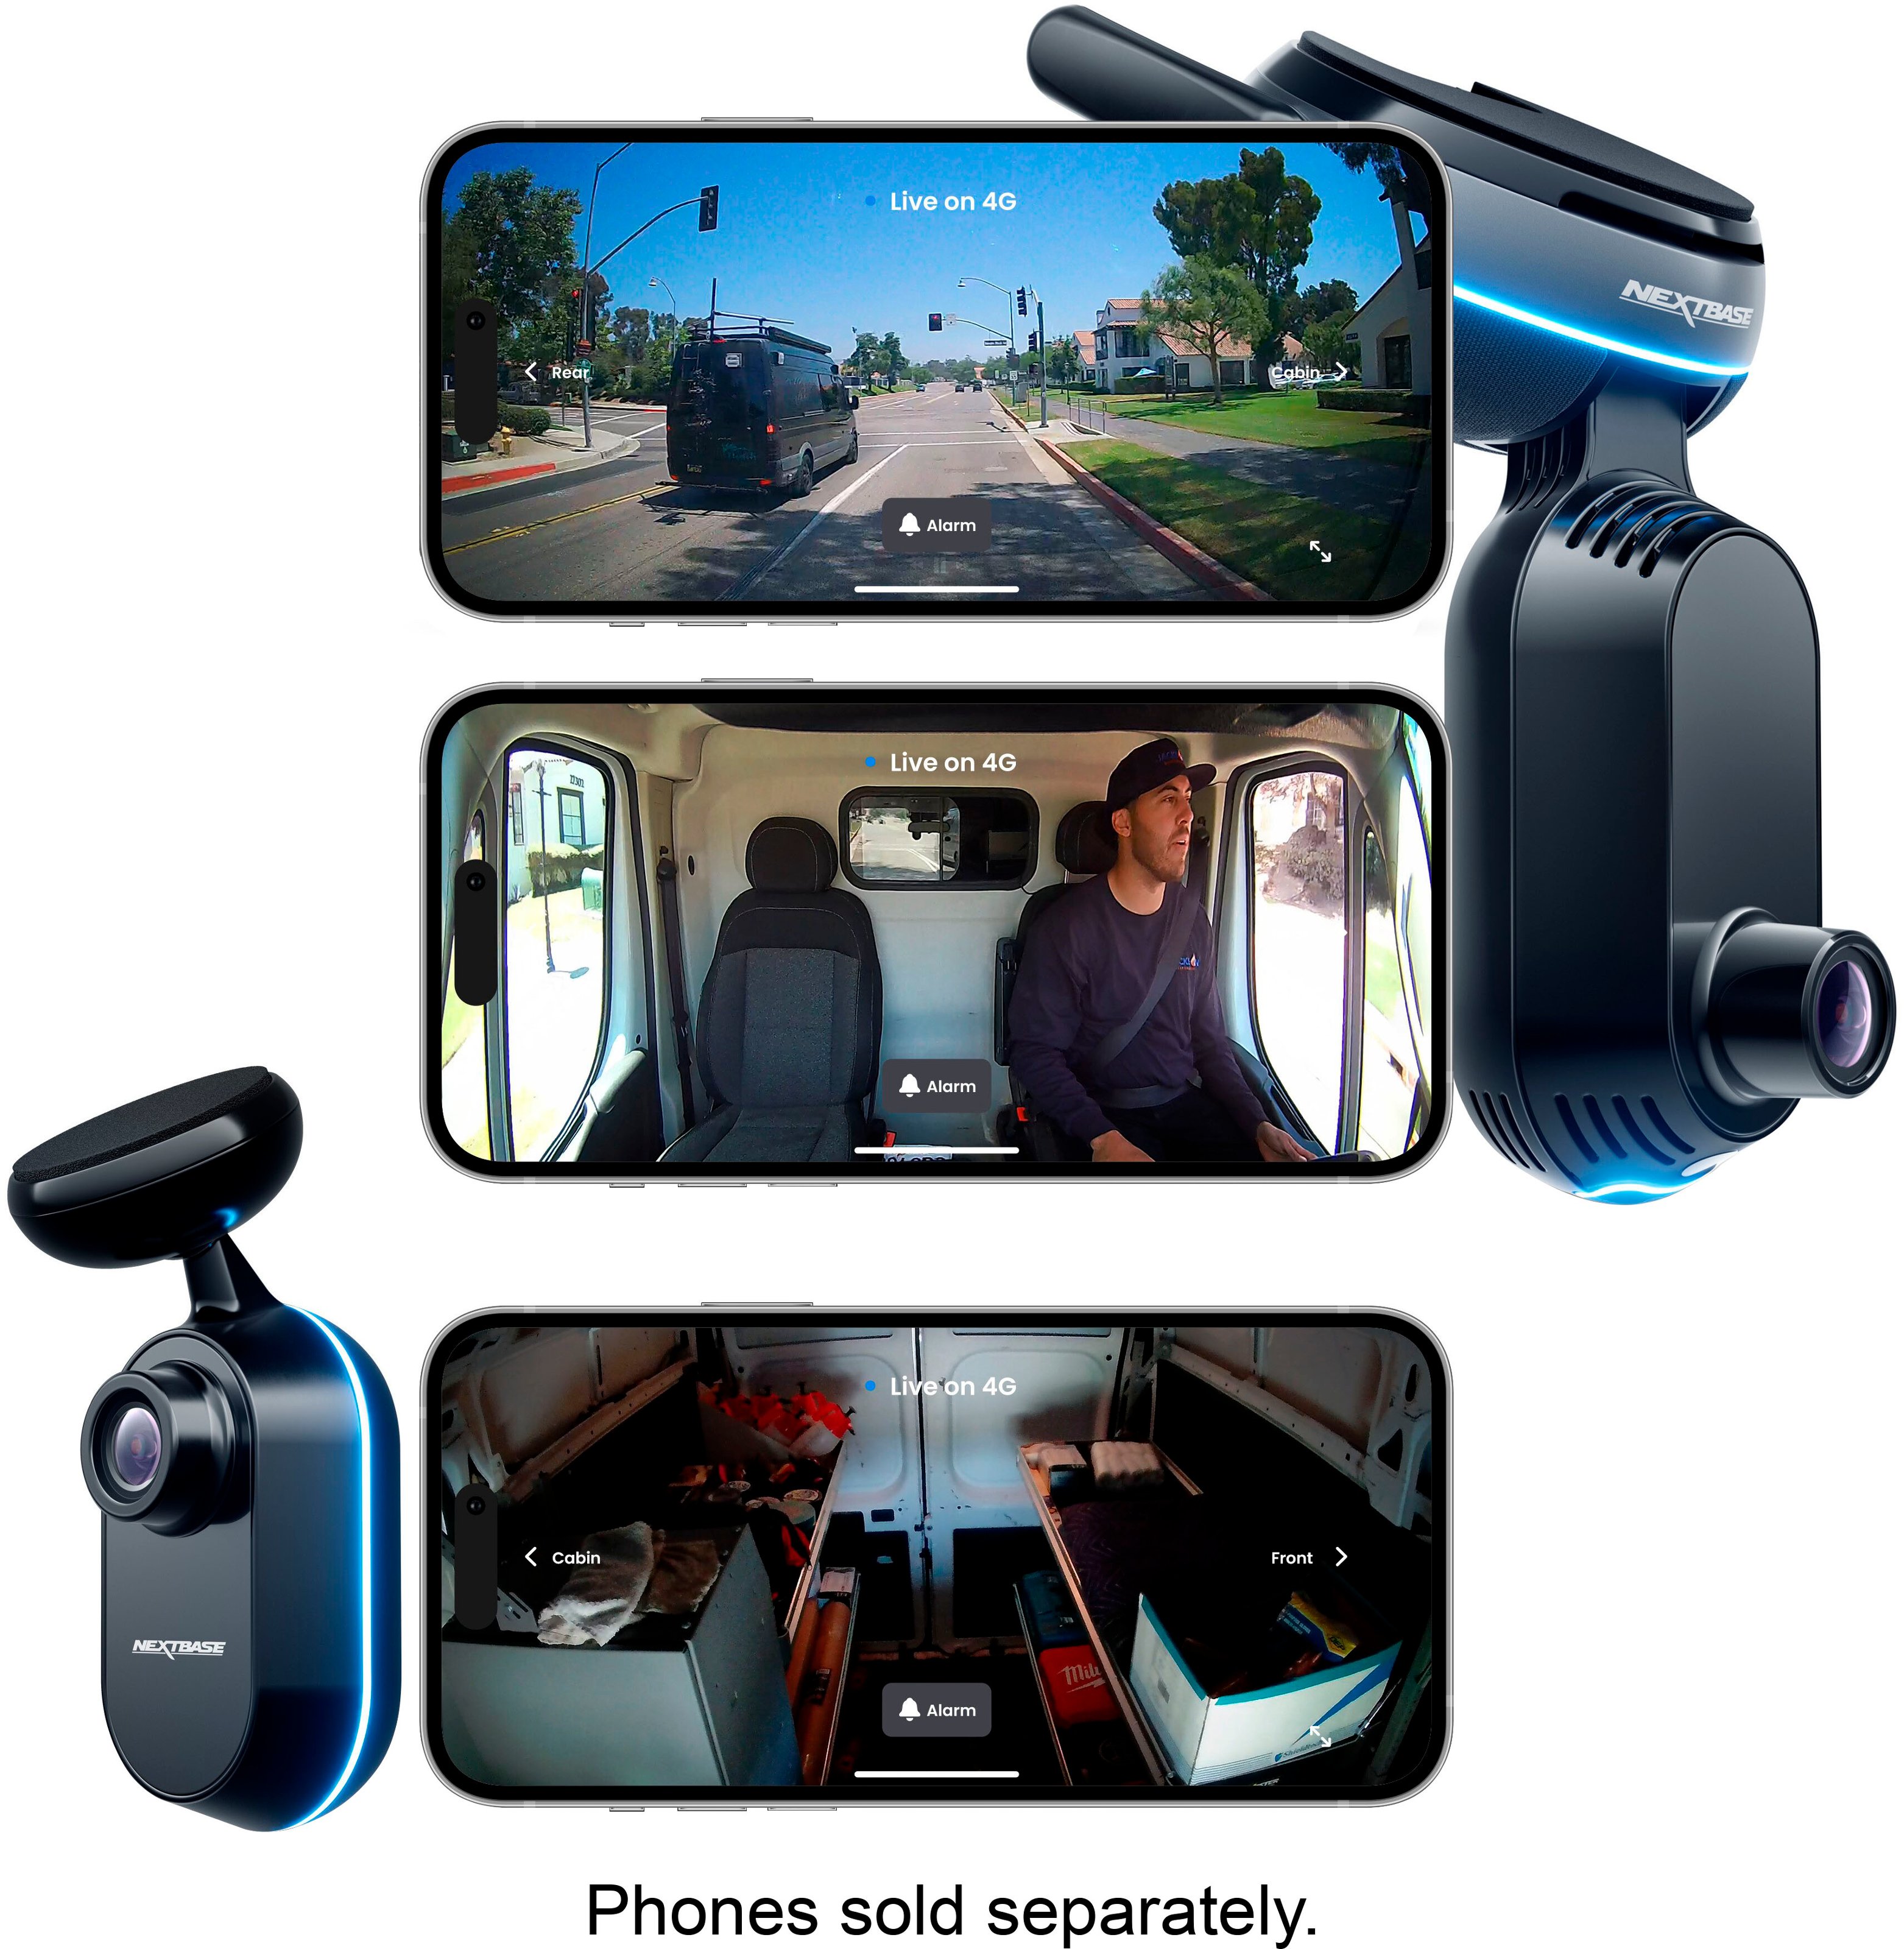 NEXS1 Smart Dash Cam